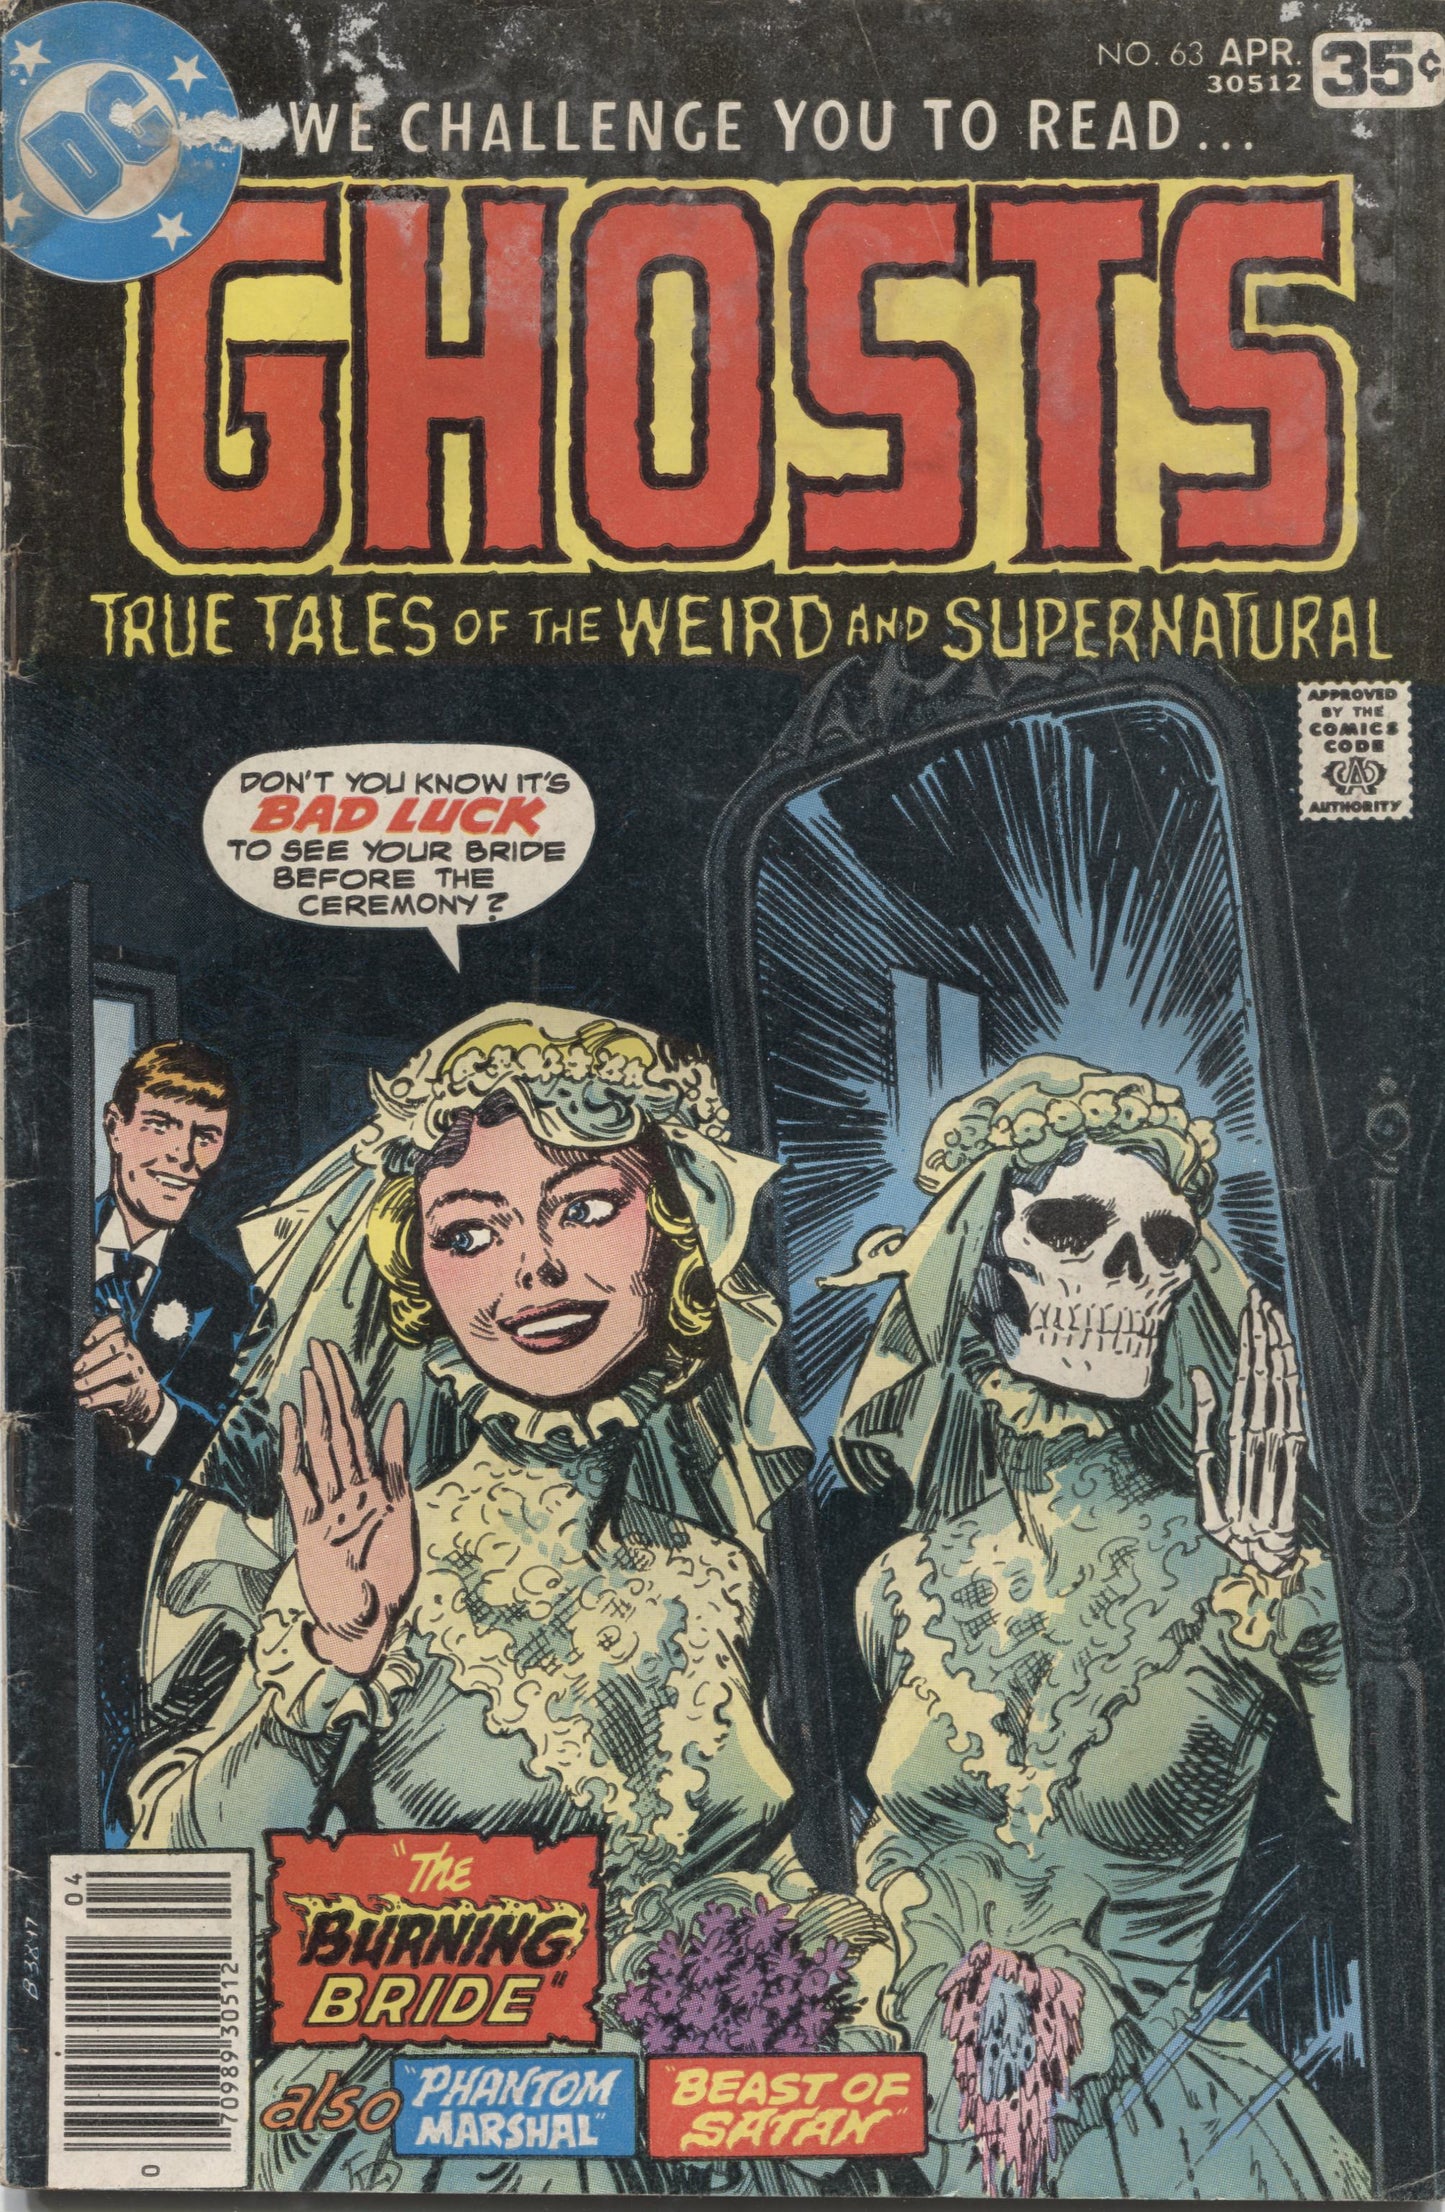 Ghosts No. 63, DC Comics, April 1978